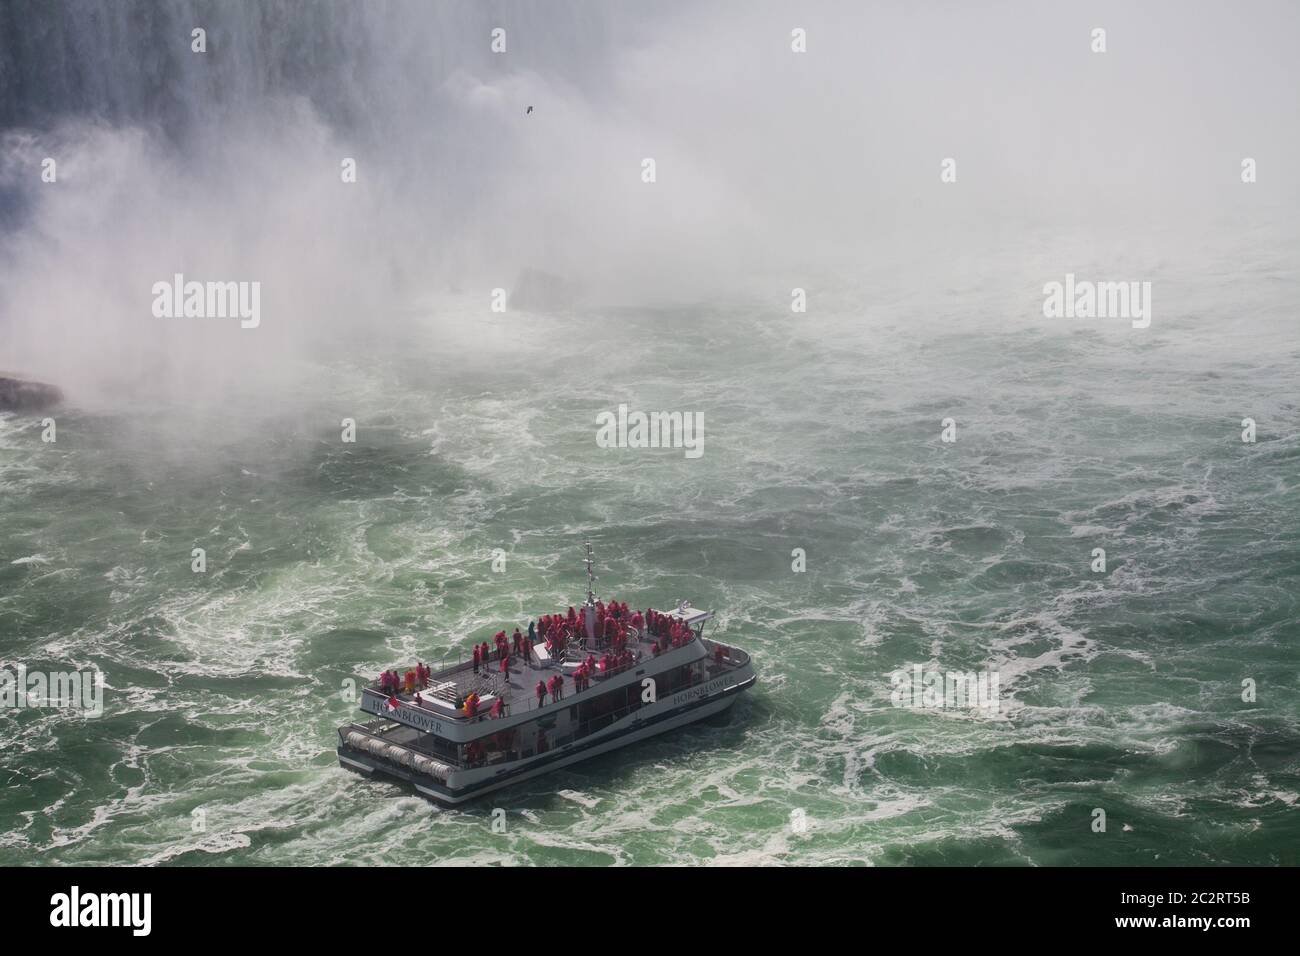 A tourist boat in Niagara river close to Niagara falls, Ontario, Canada Stock Photo